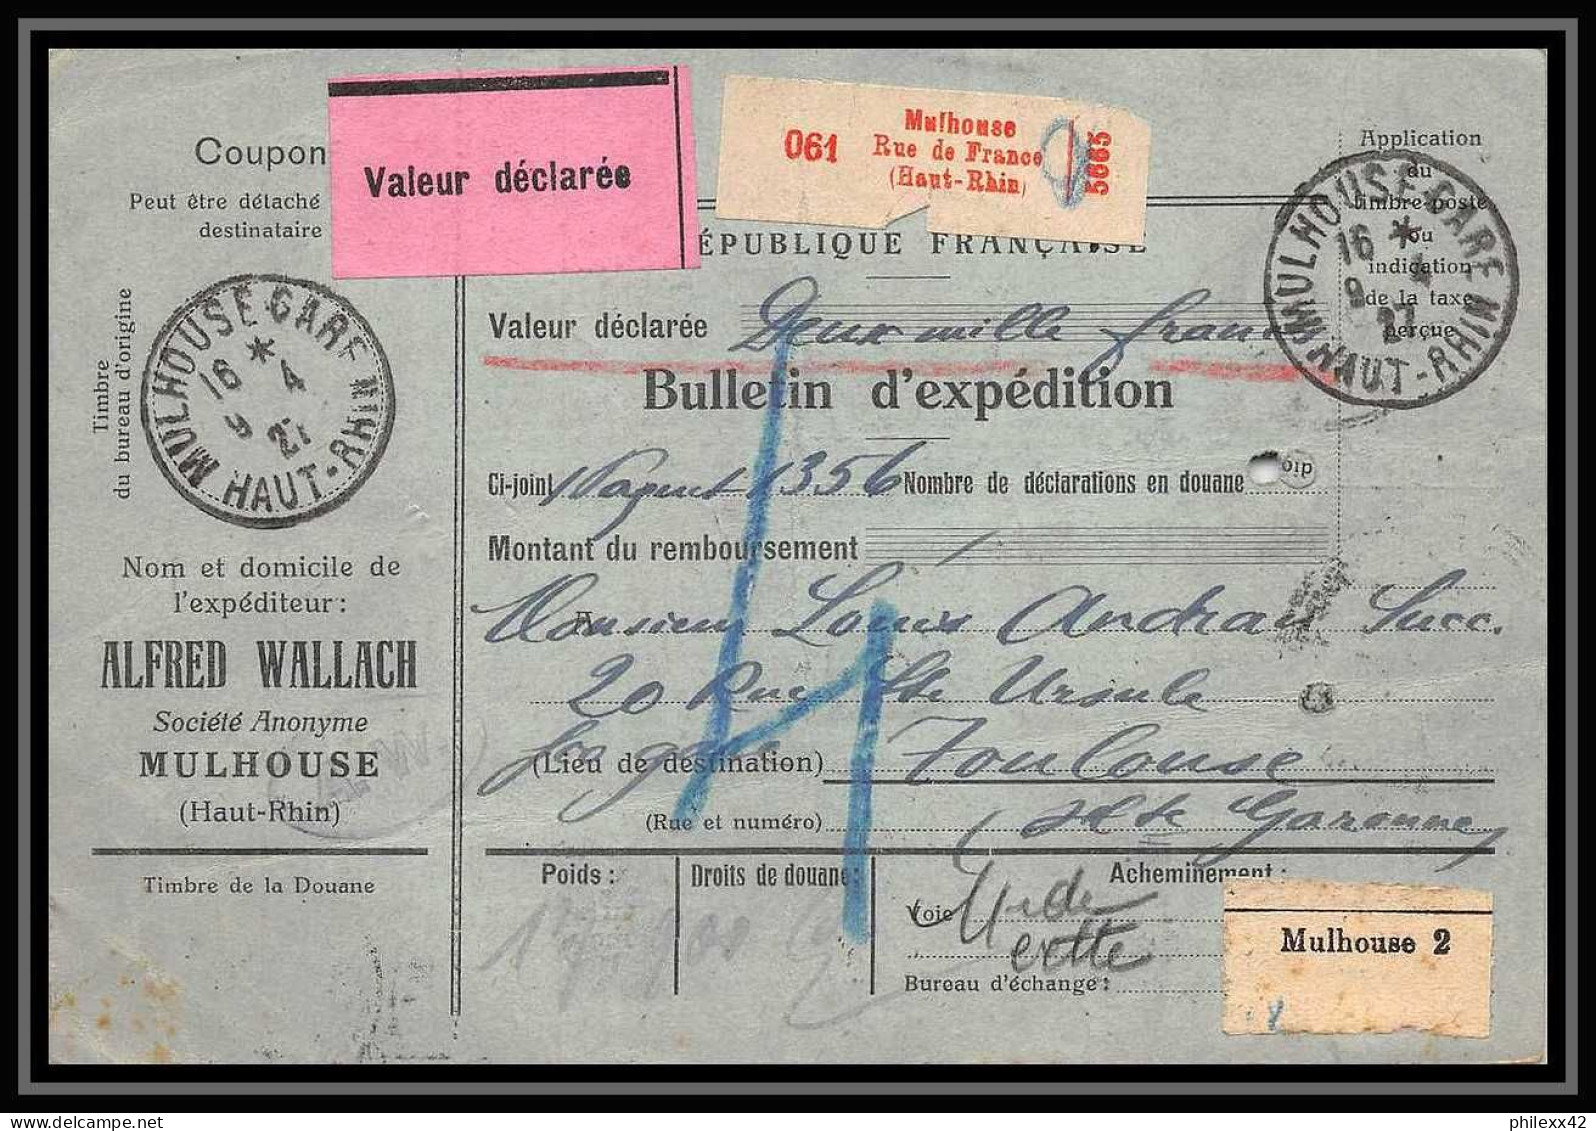 25028 Bulletin D'expédition France Colis Postaux Fiscal Haut Rhin 1927 Mulhouse Semeuse Merson 123+206 Valeur Déclarée - Cartas & Documentos